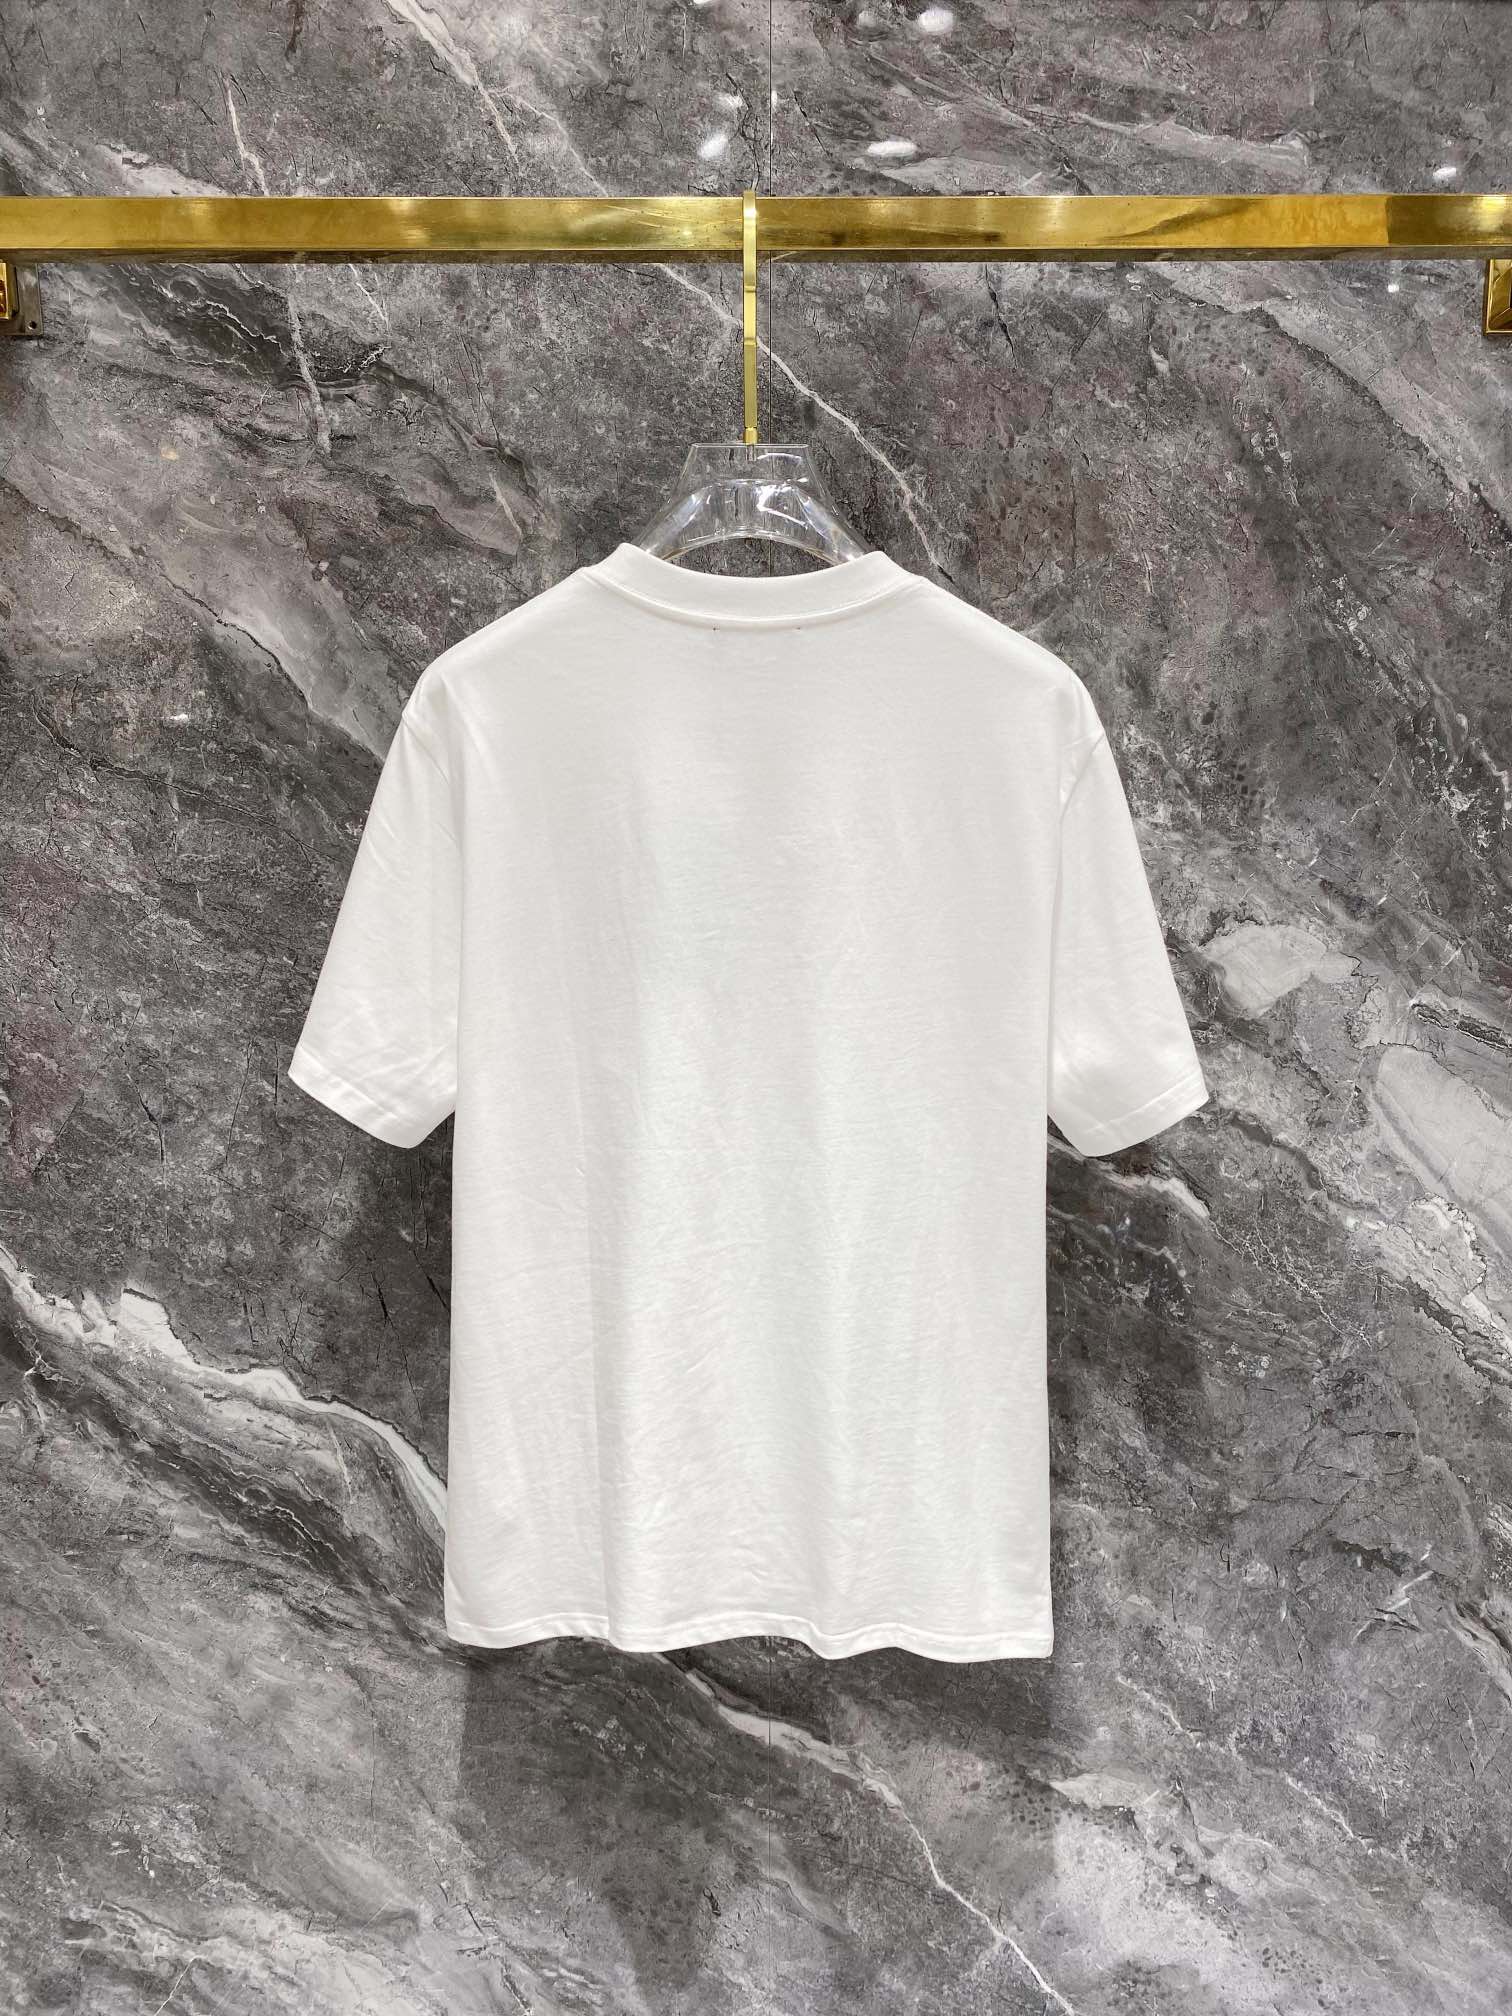 激安大特価最新作の フェンディ t シャツ メンズコピー トップス 純綿 プリント 短袖 ファッション ホワイト_6